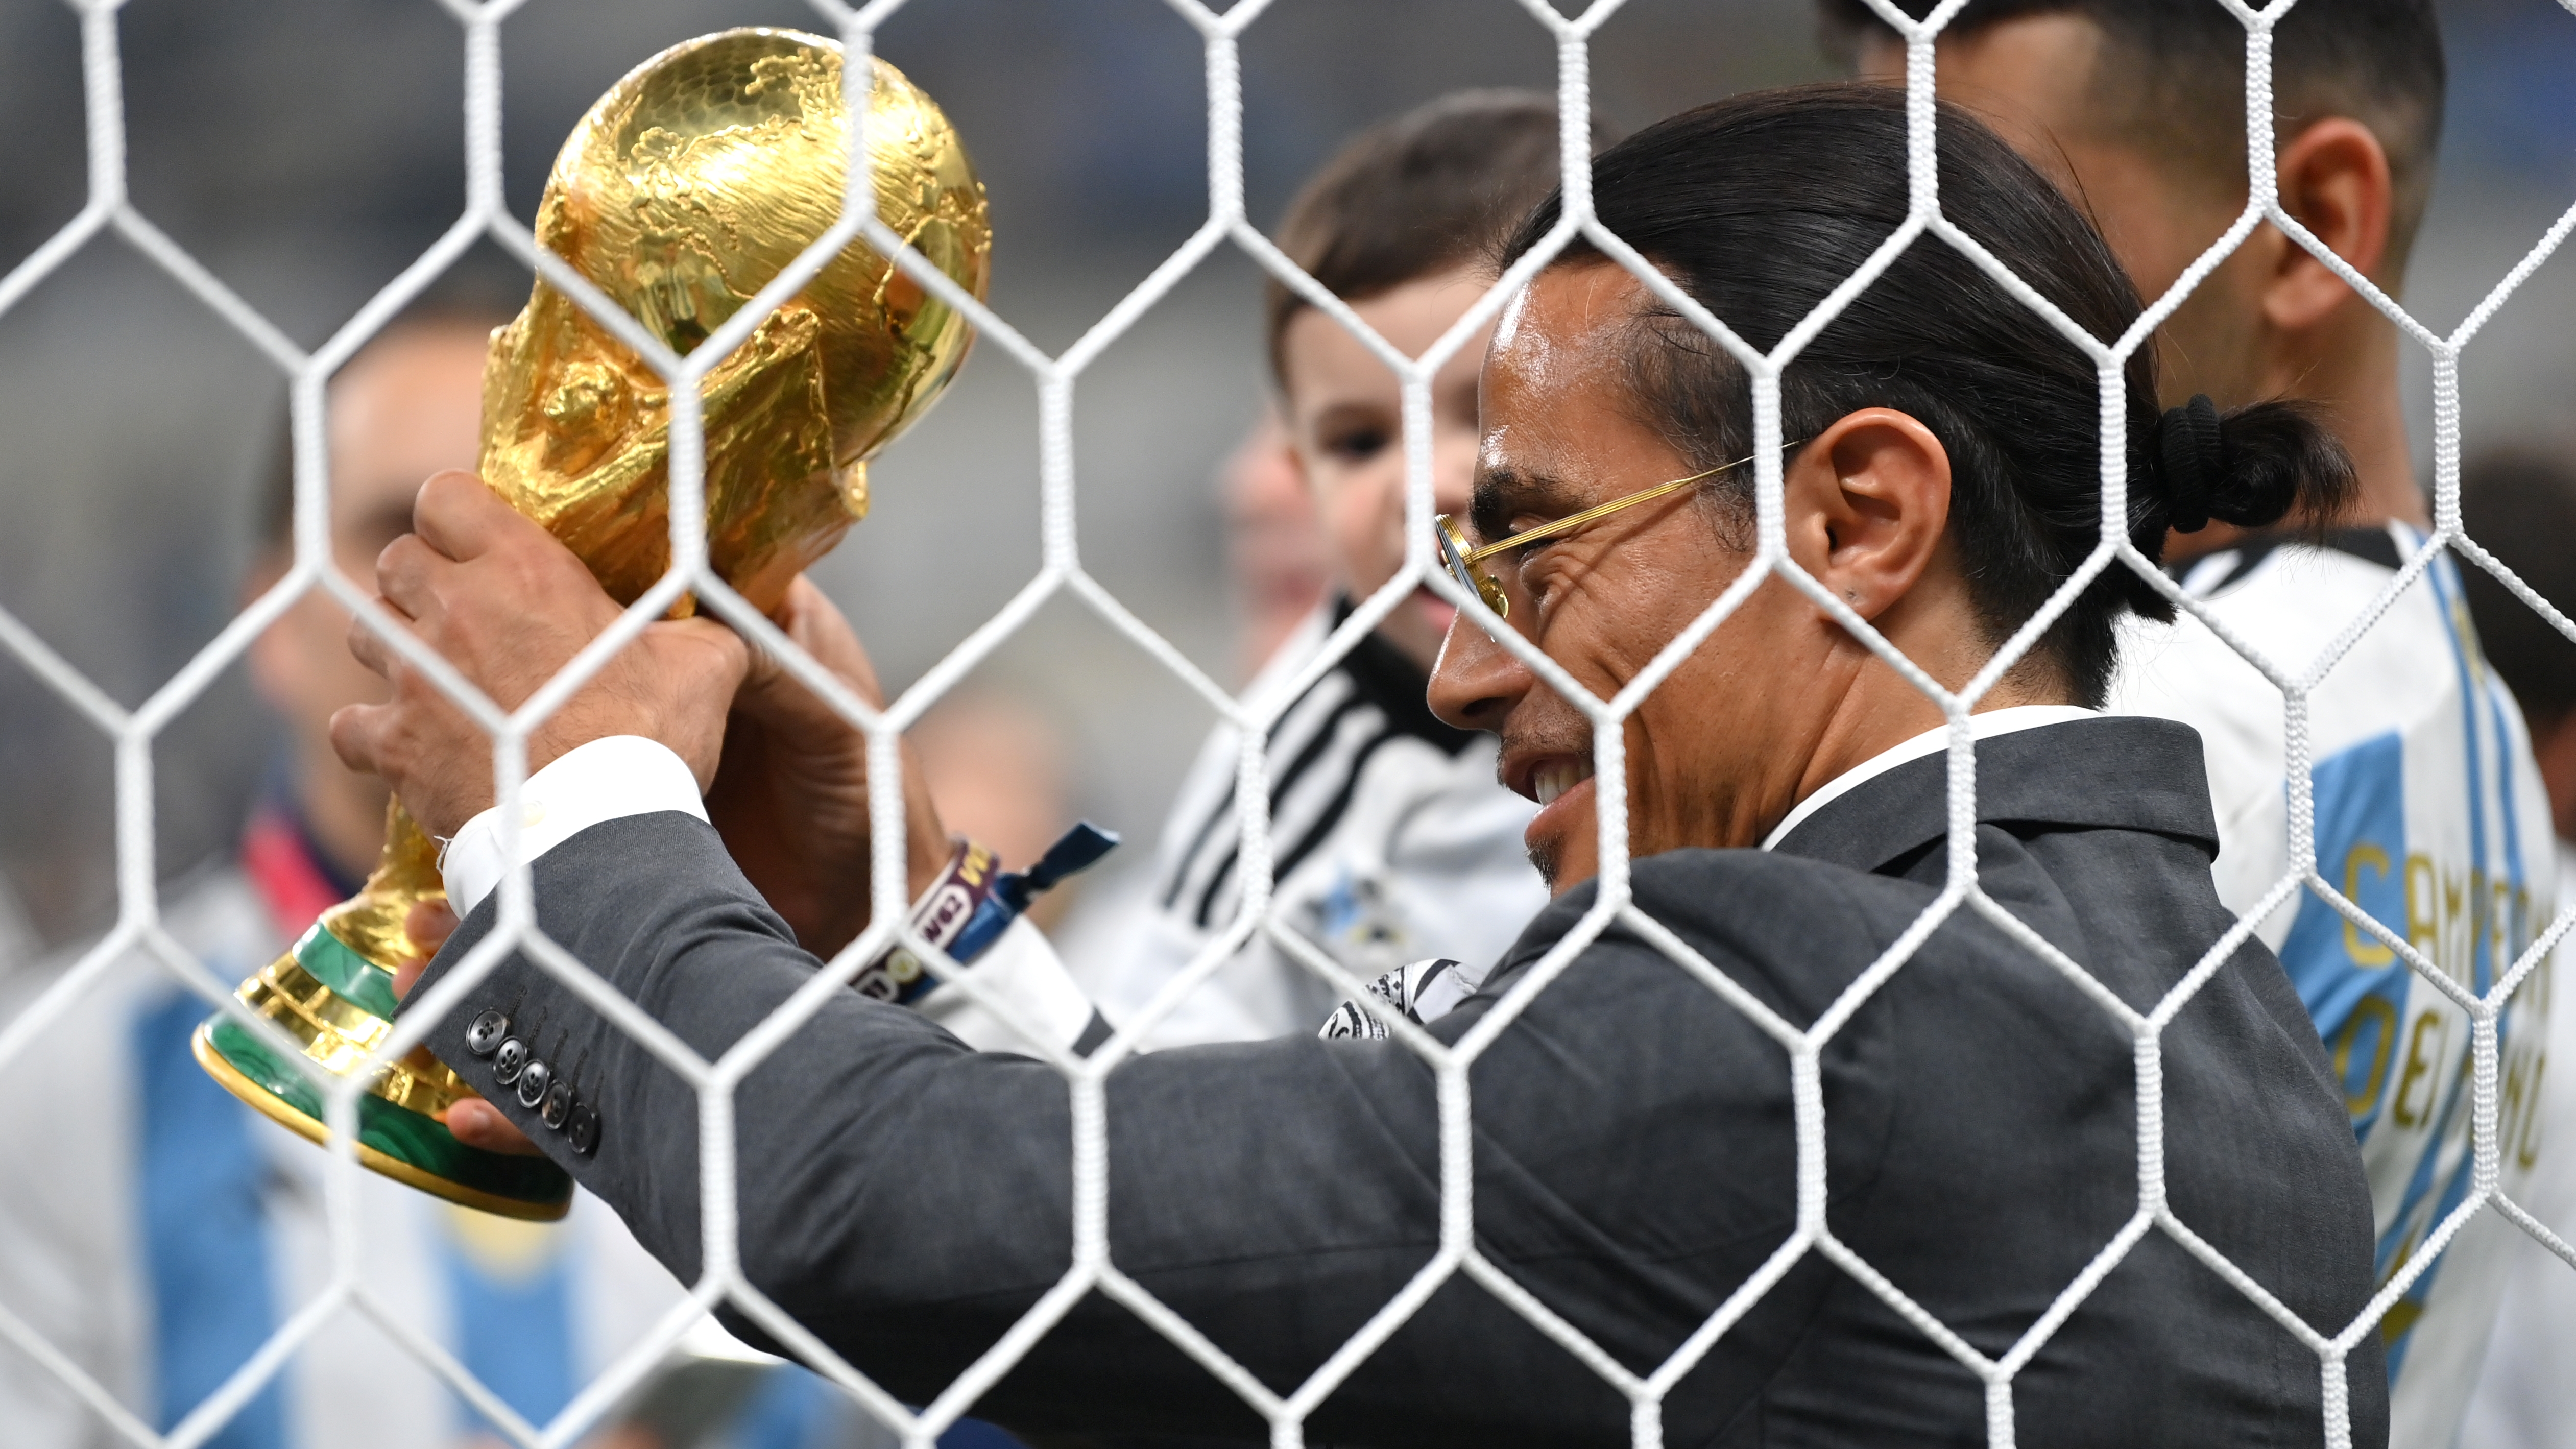 El chef levantó la Copa del Mundo, algo que está prohibido por FIFA ya que él no es un futbolista que la haya ganado ni un mandatario (Getty Images)